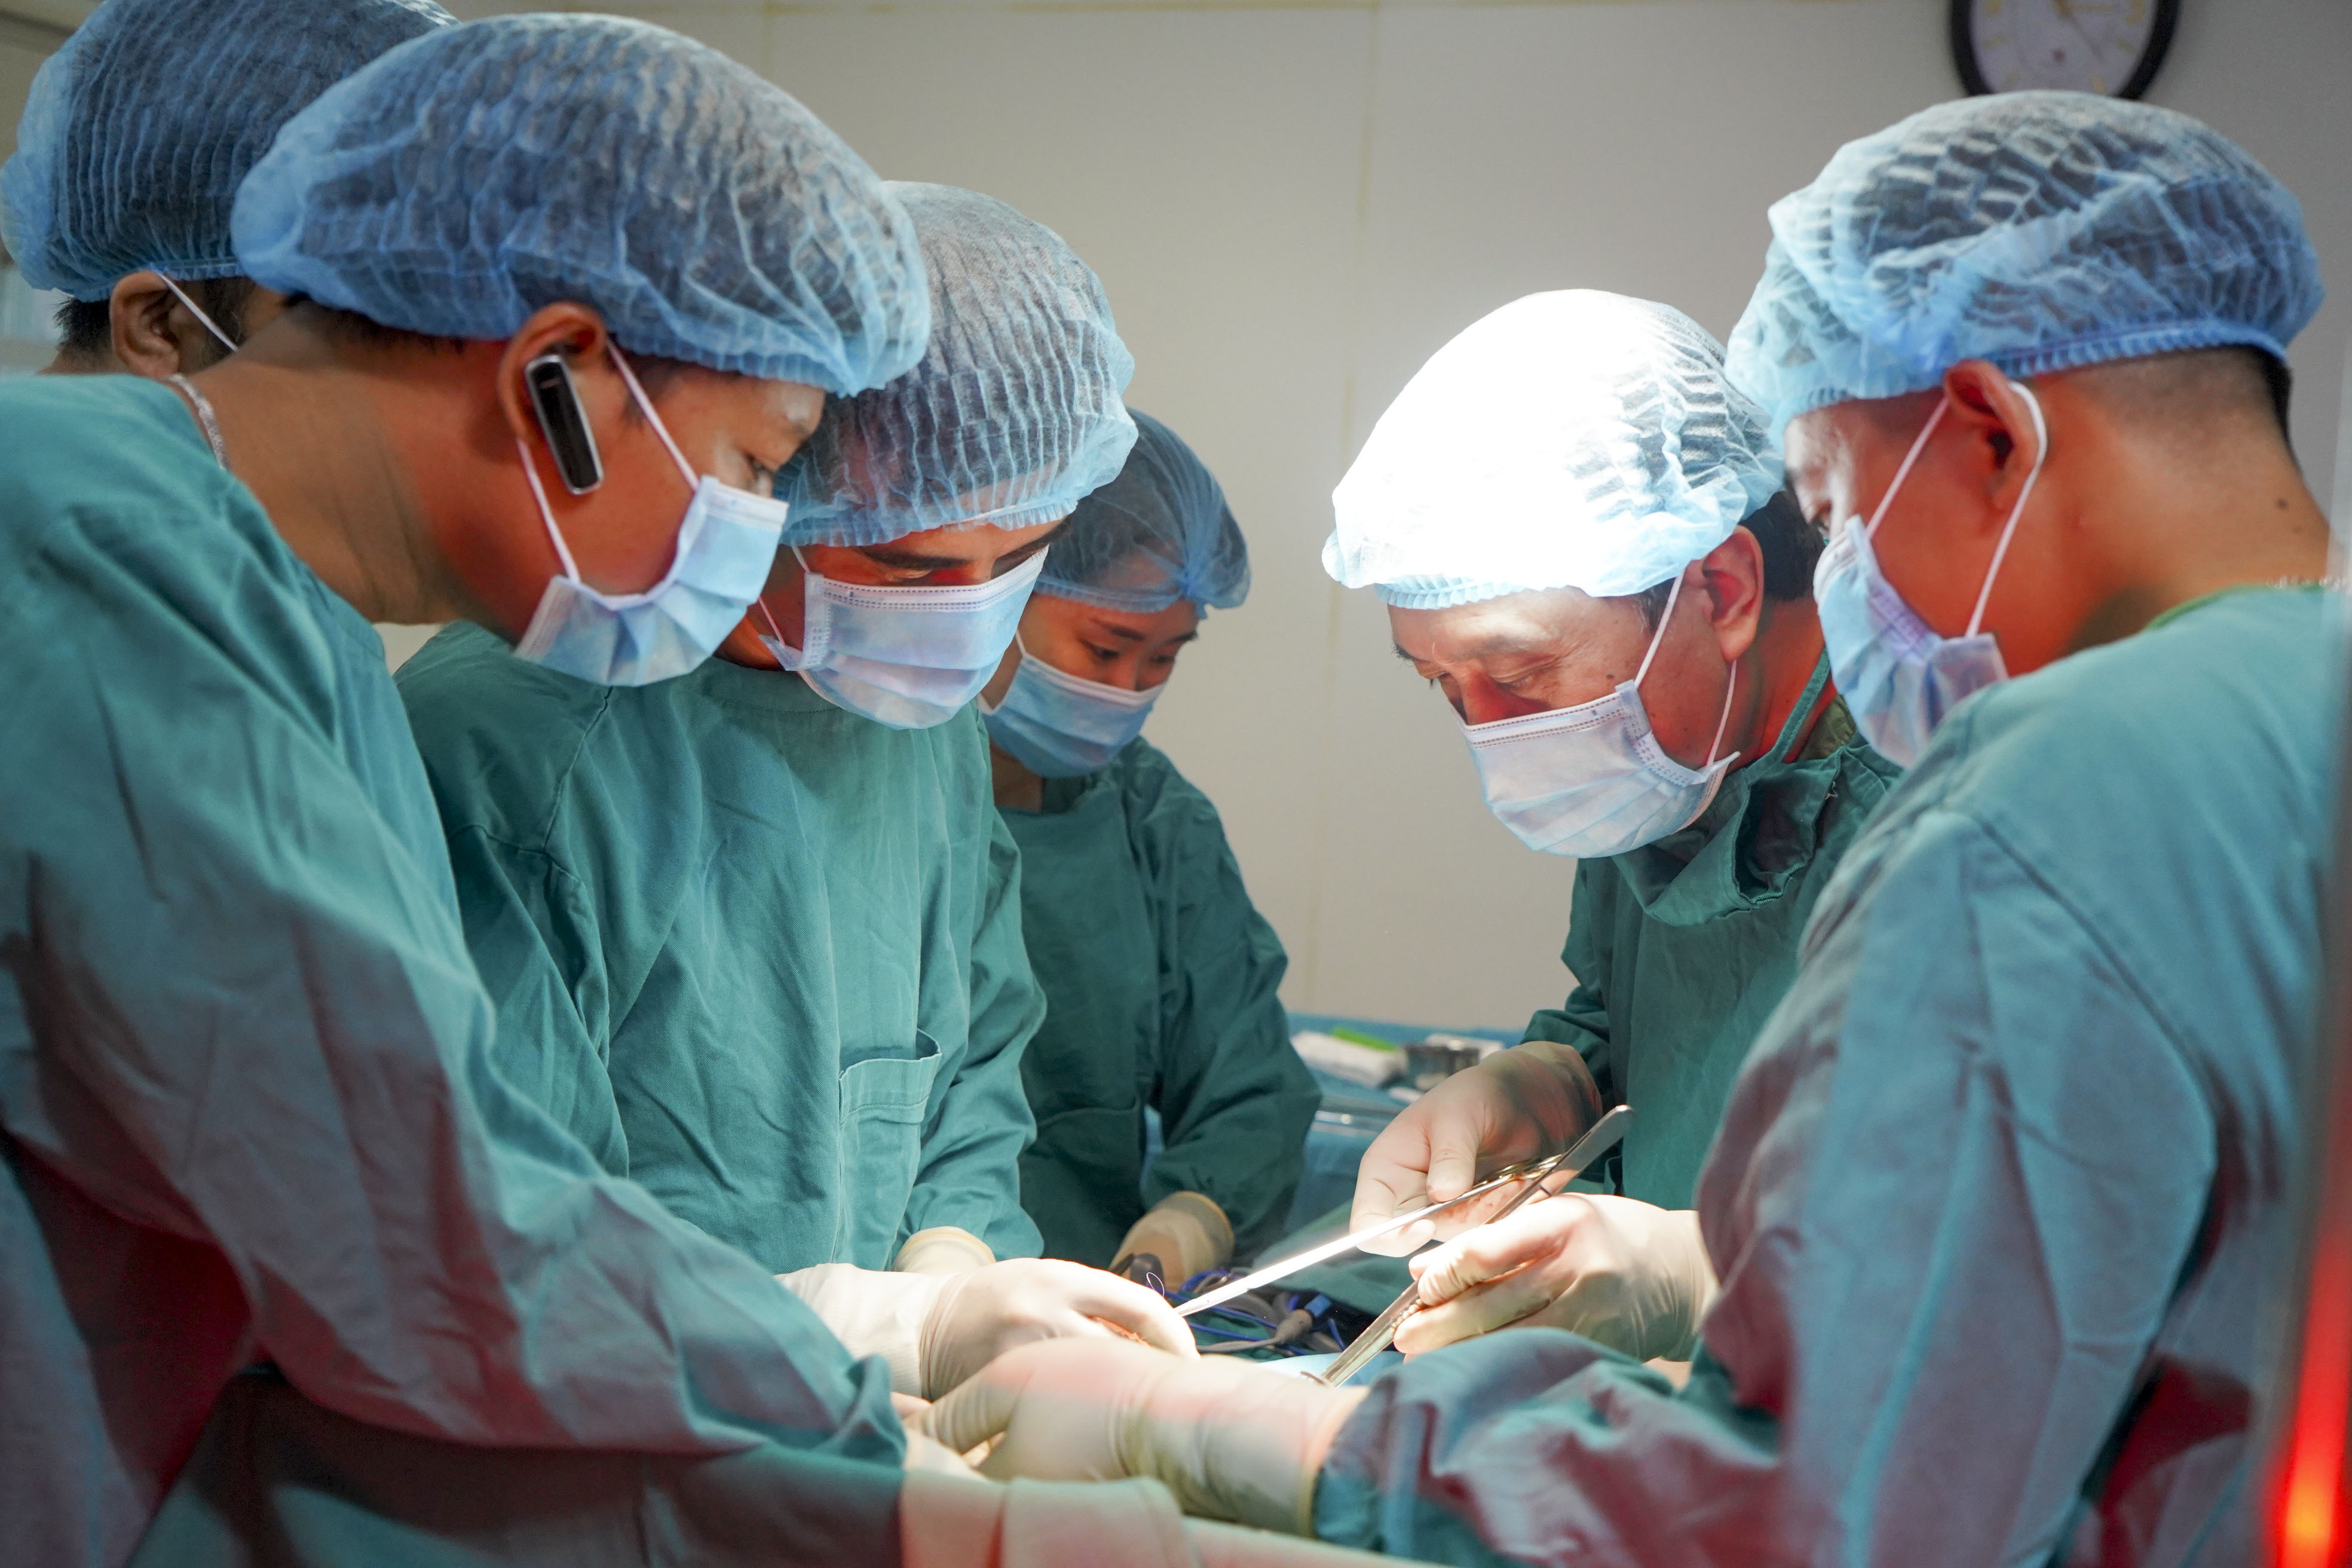 Chuyên gia đầu ngành về phẫu thuật tiêu hóa trực tiếp phẫu thuật cho bệnh nhân tại viện